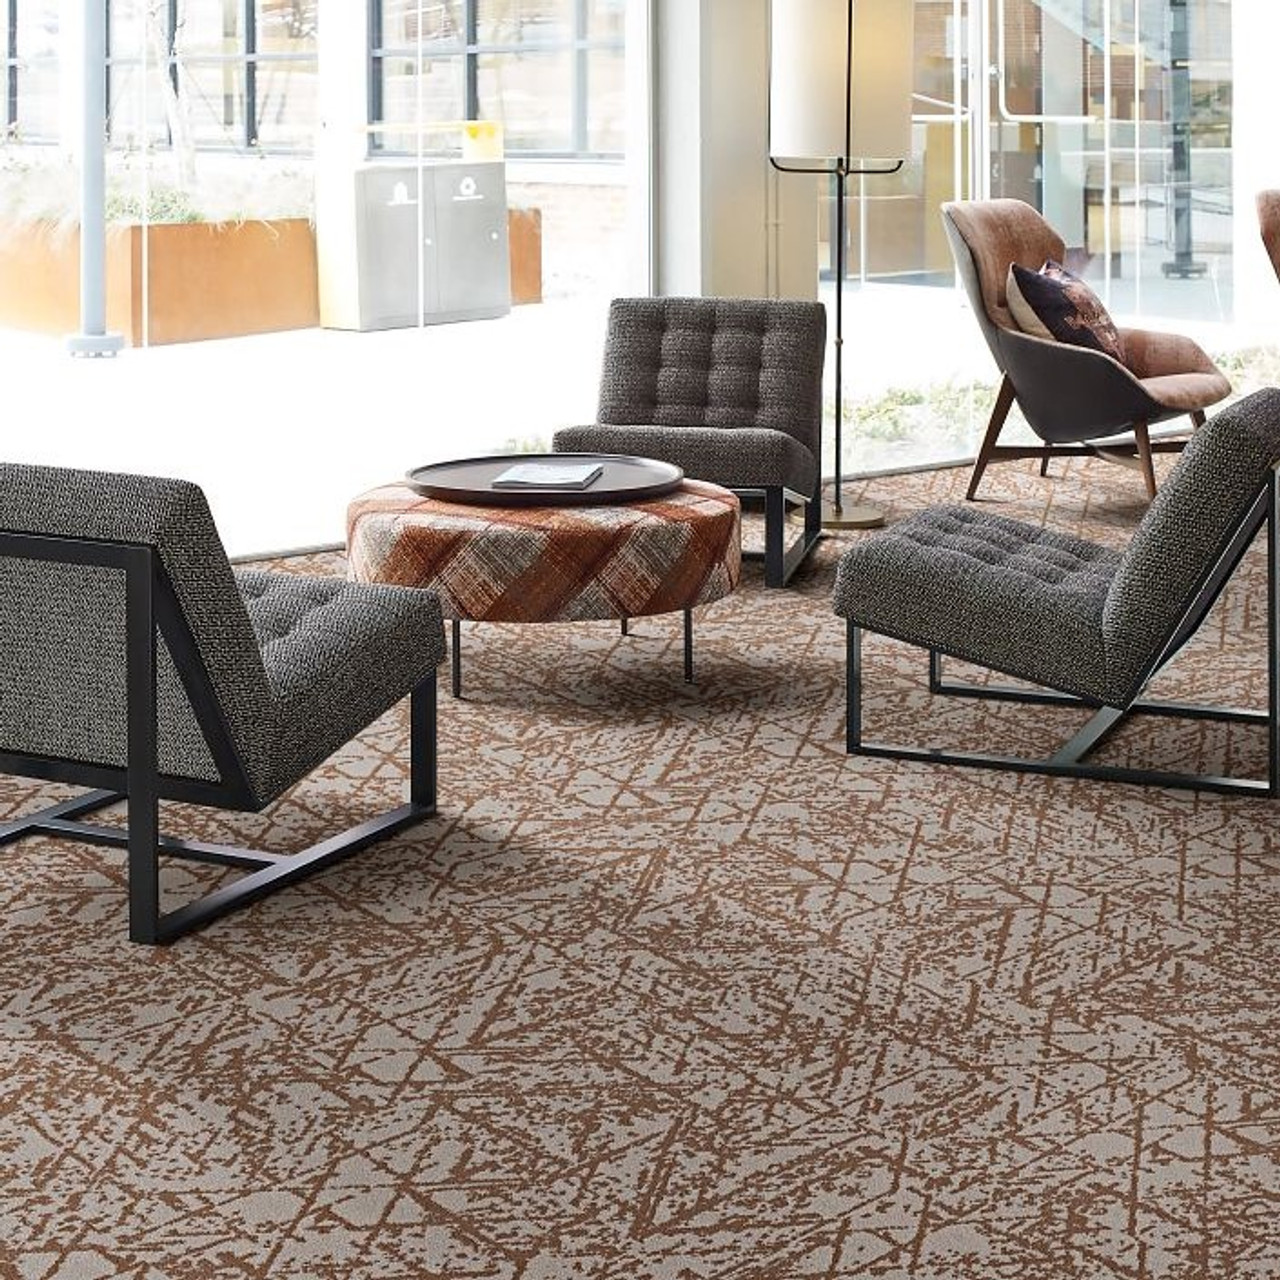 Divergent Multi-Purpose Carpet Adhesive 1 Gallon